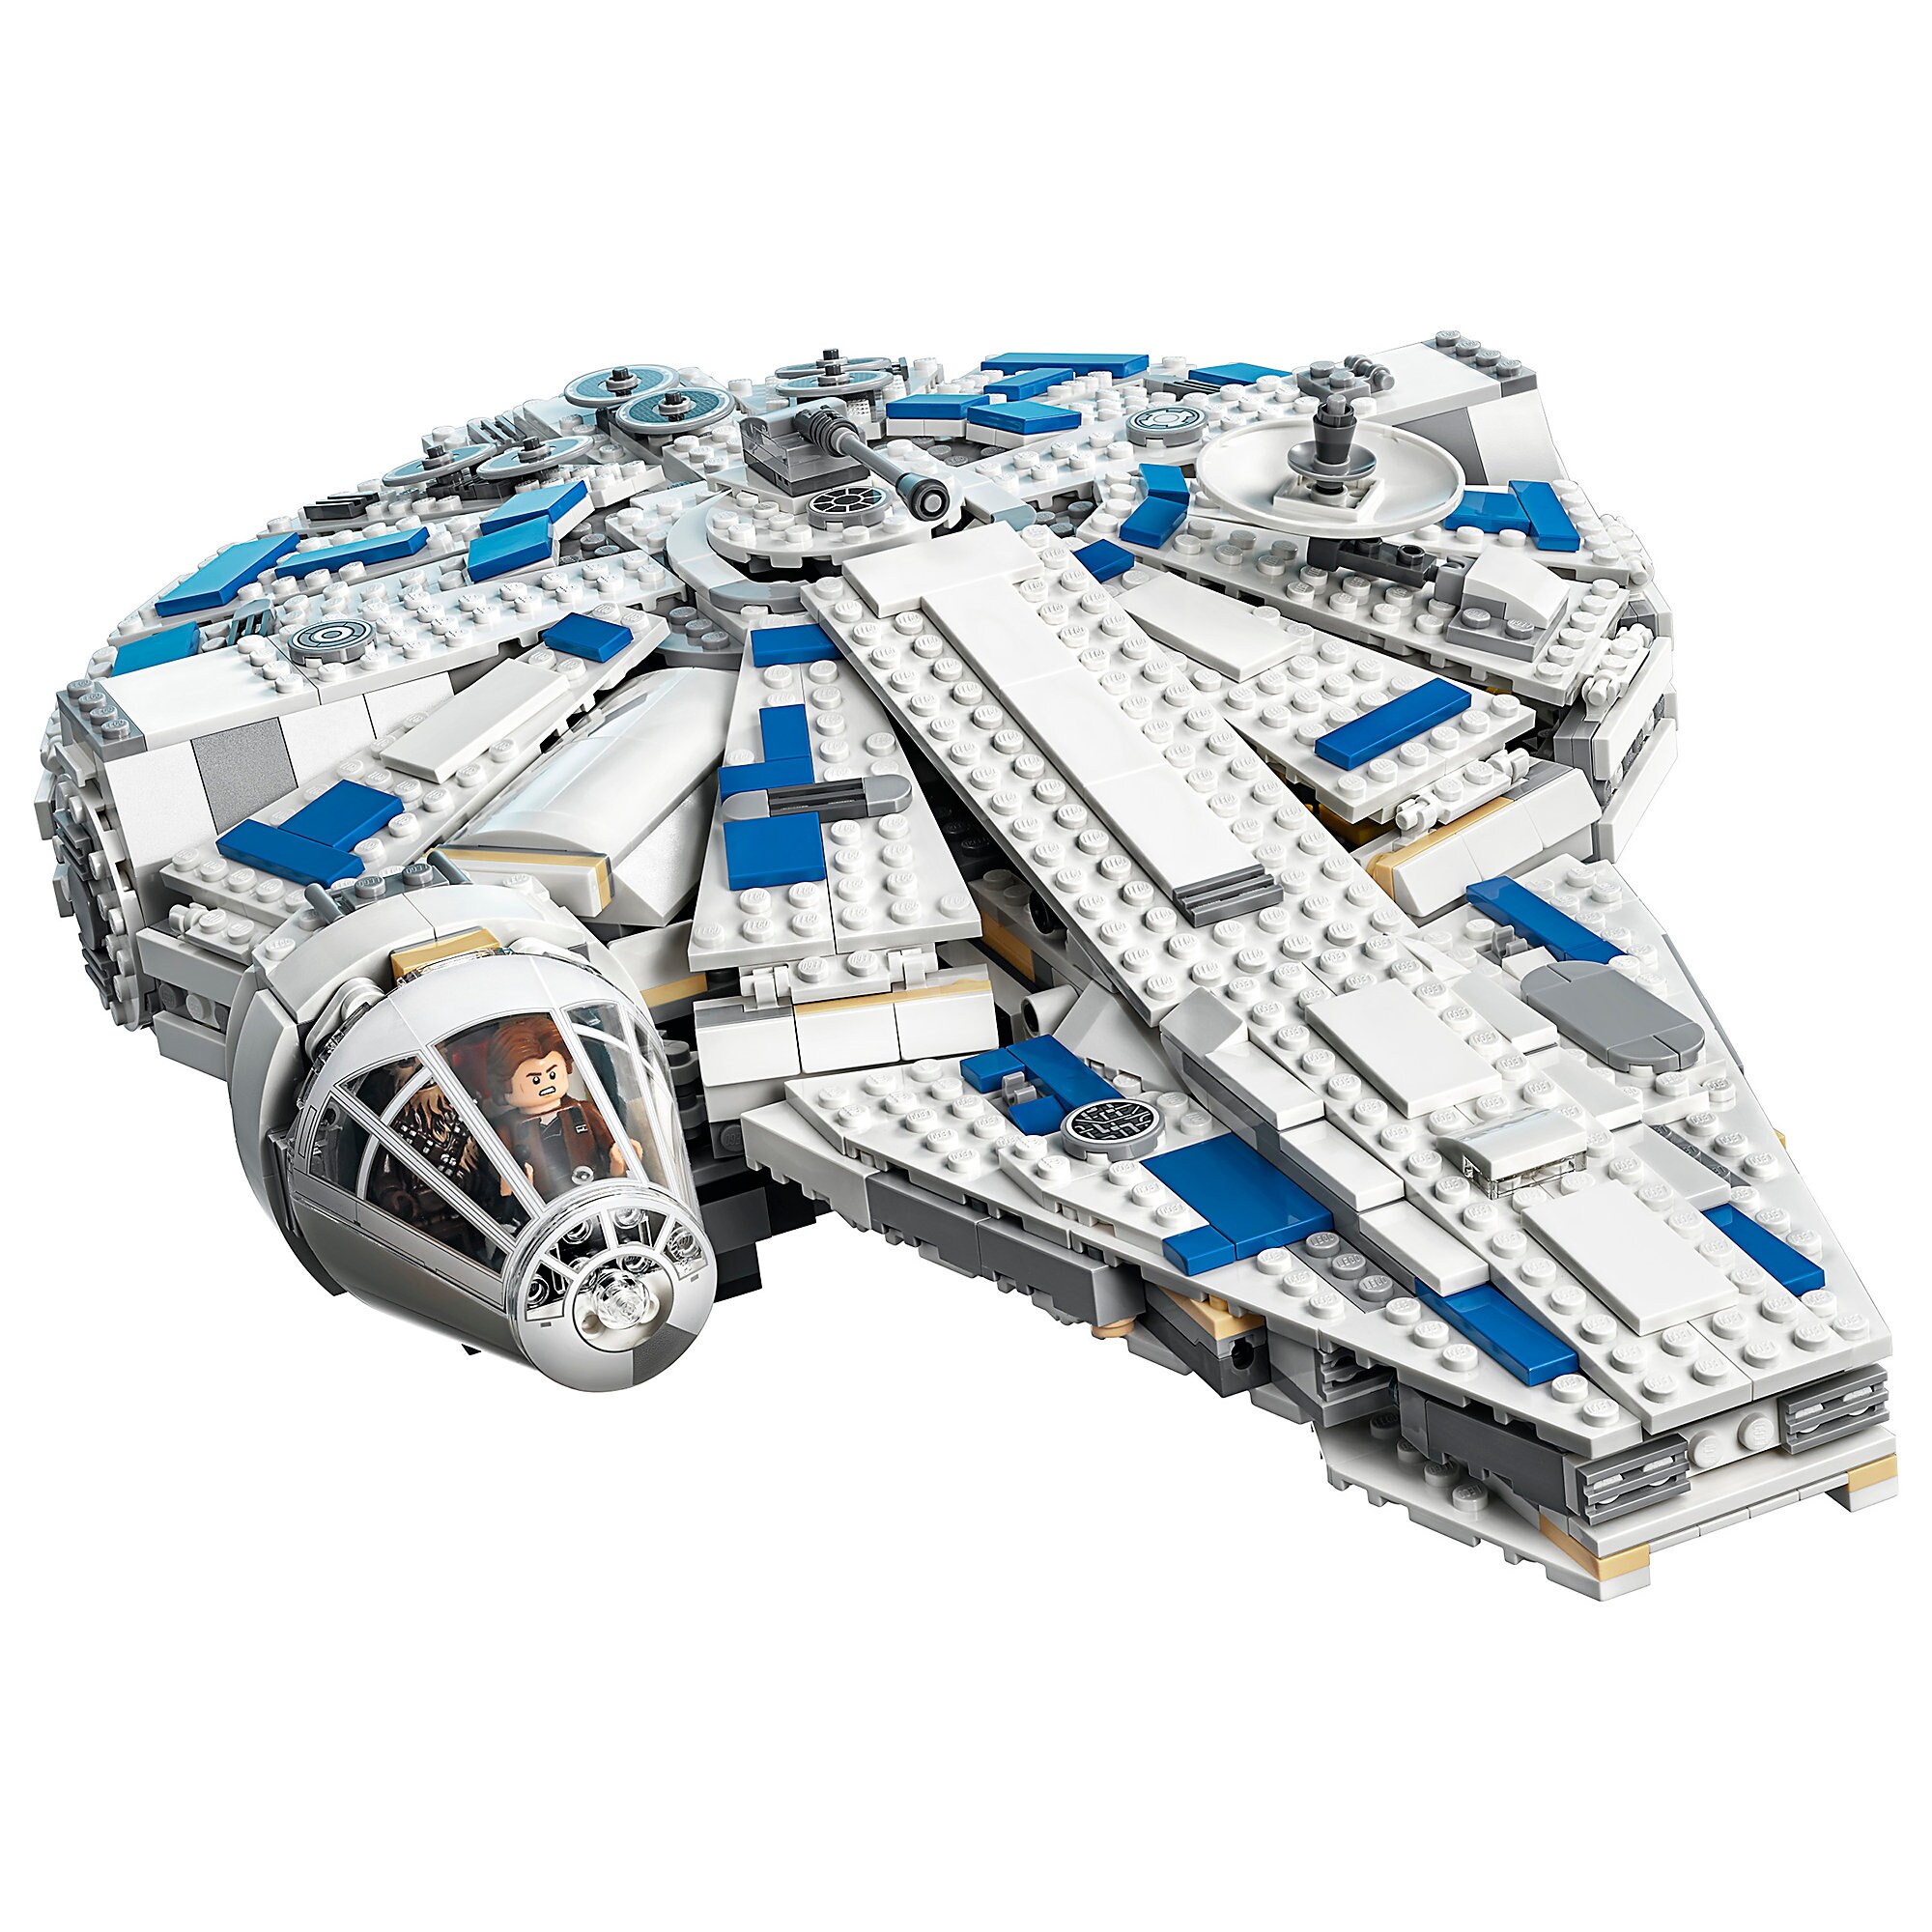 Millennium Falcon Kessel Run Playset by LEGO - Solo: A Star Wars Story